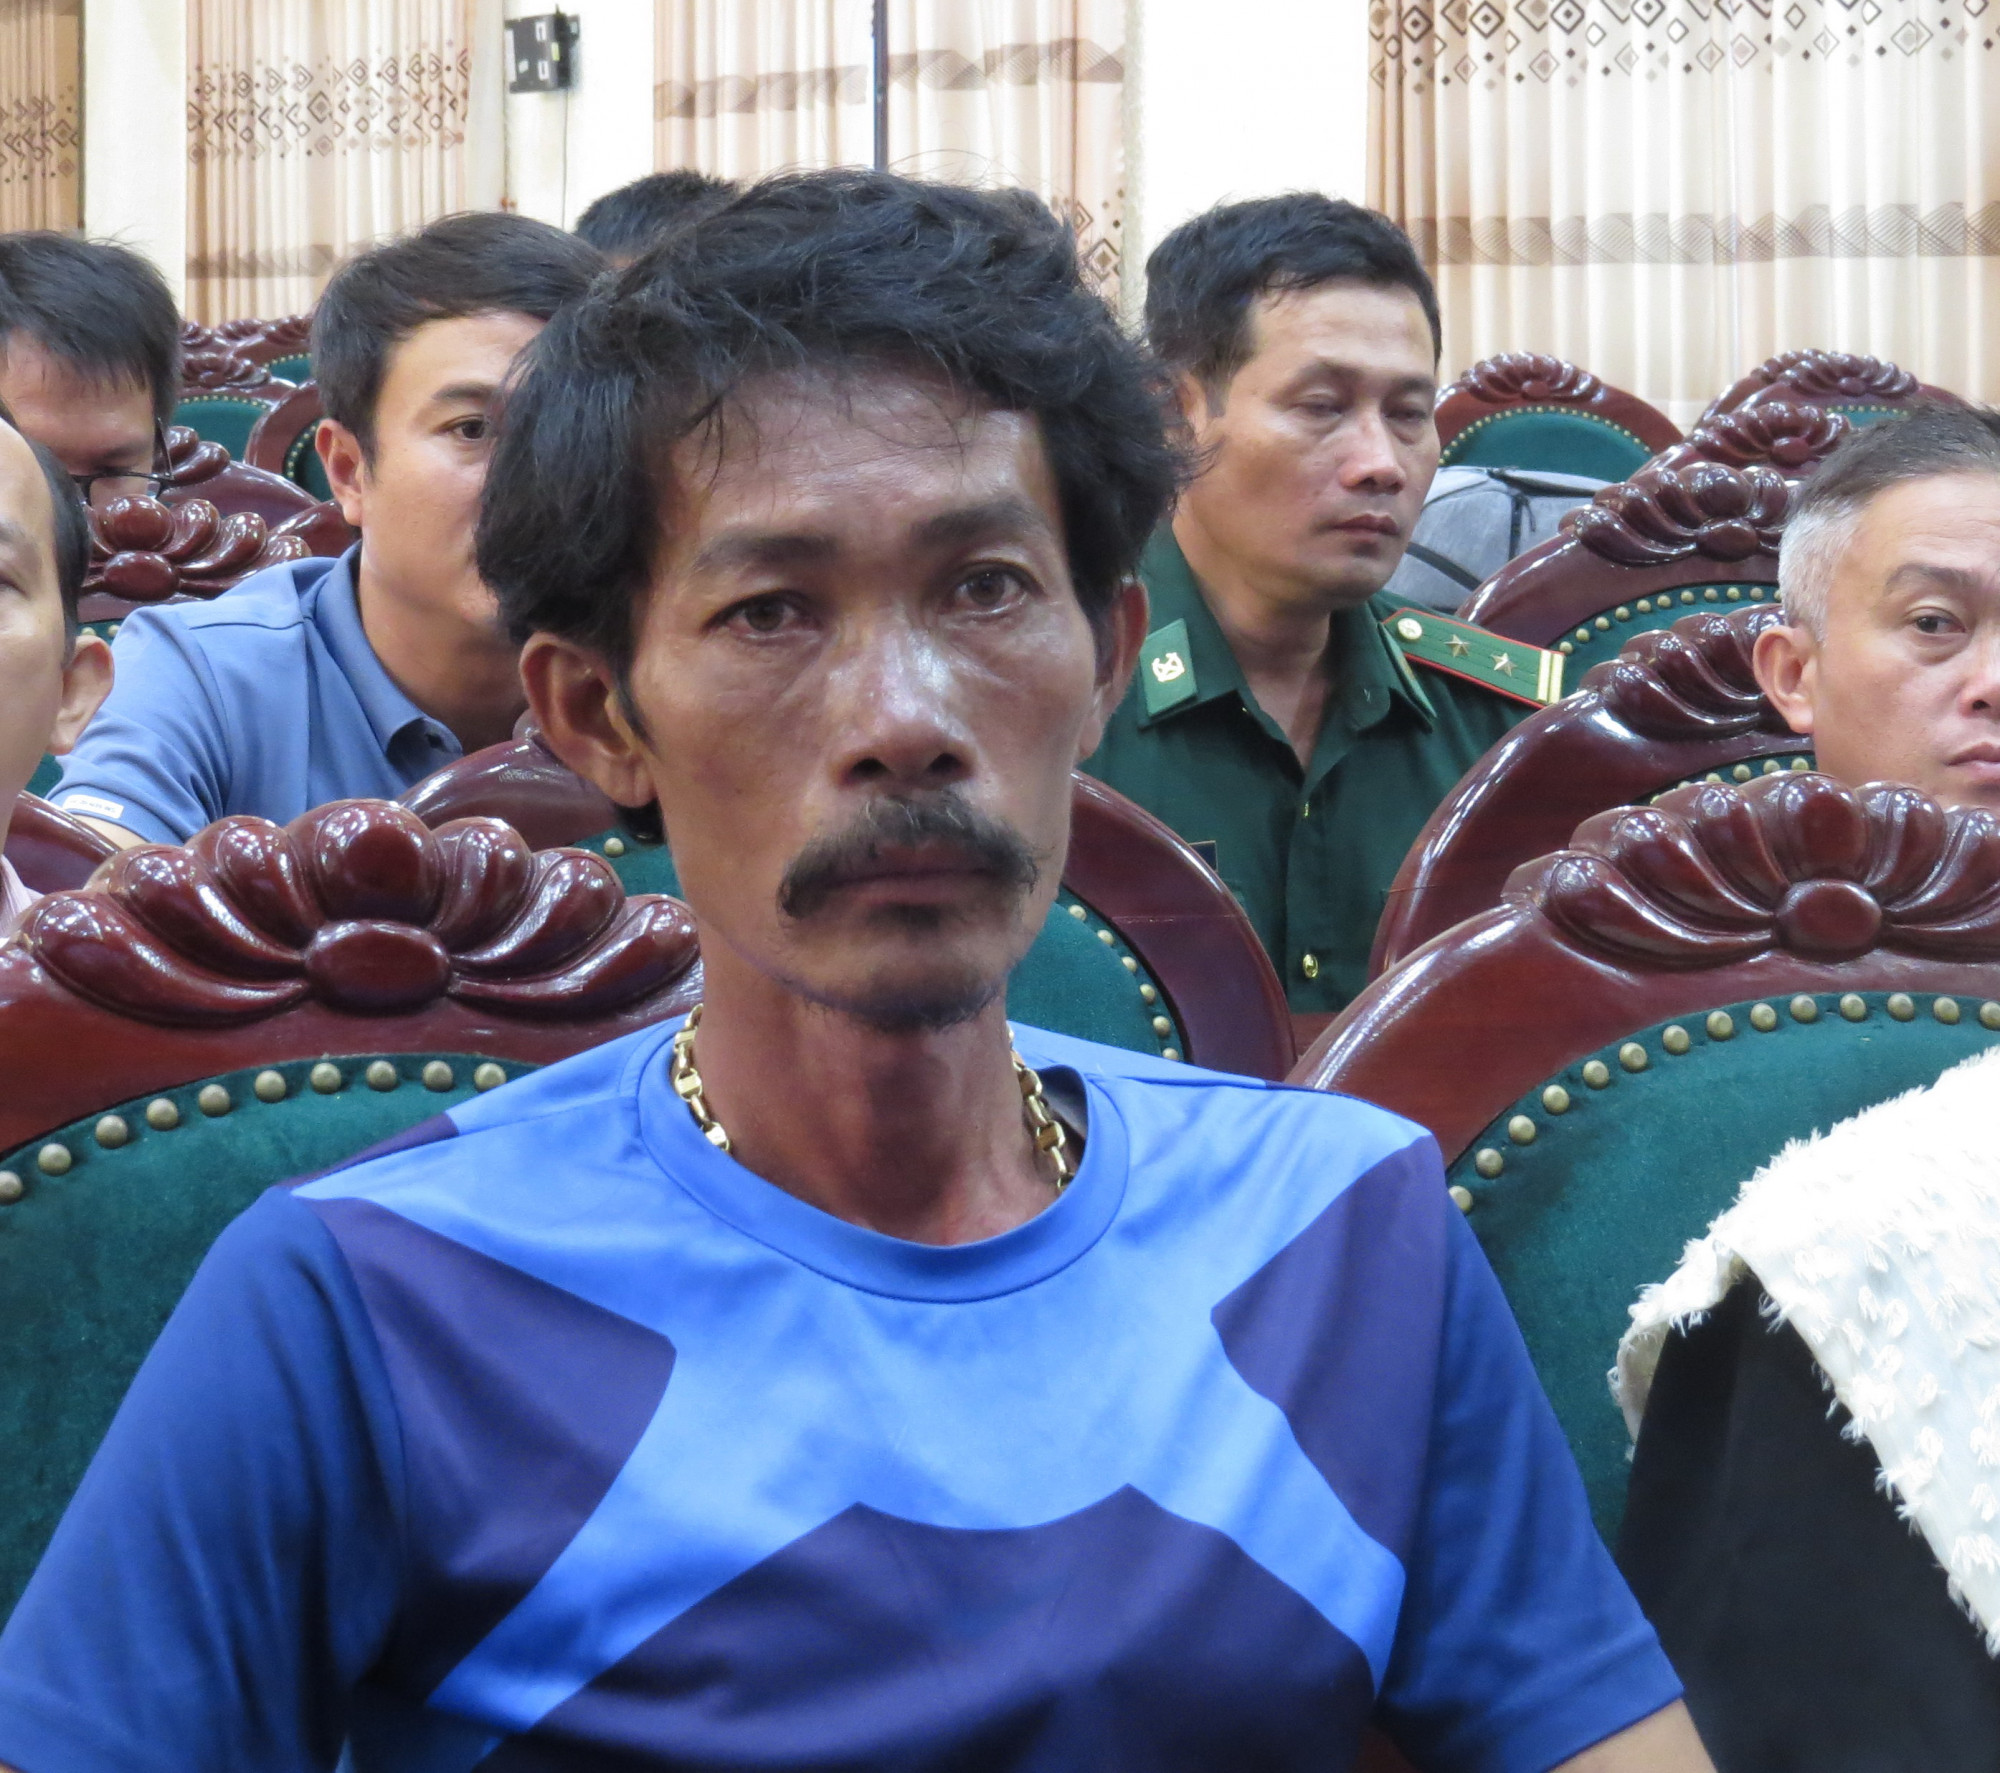 Ông Bùi Văn Toàn, thuyền trưởng tàu cá Bình Thuận bị chìm 